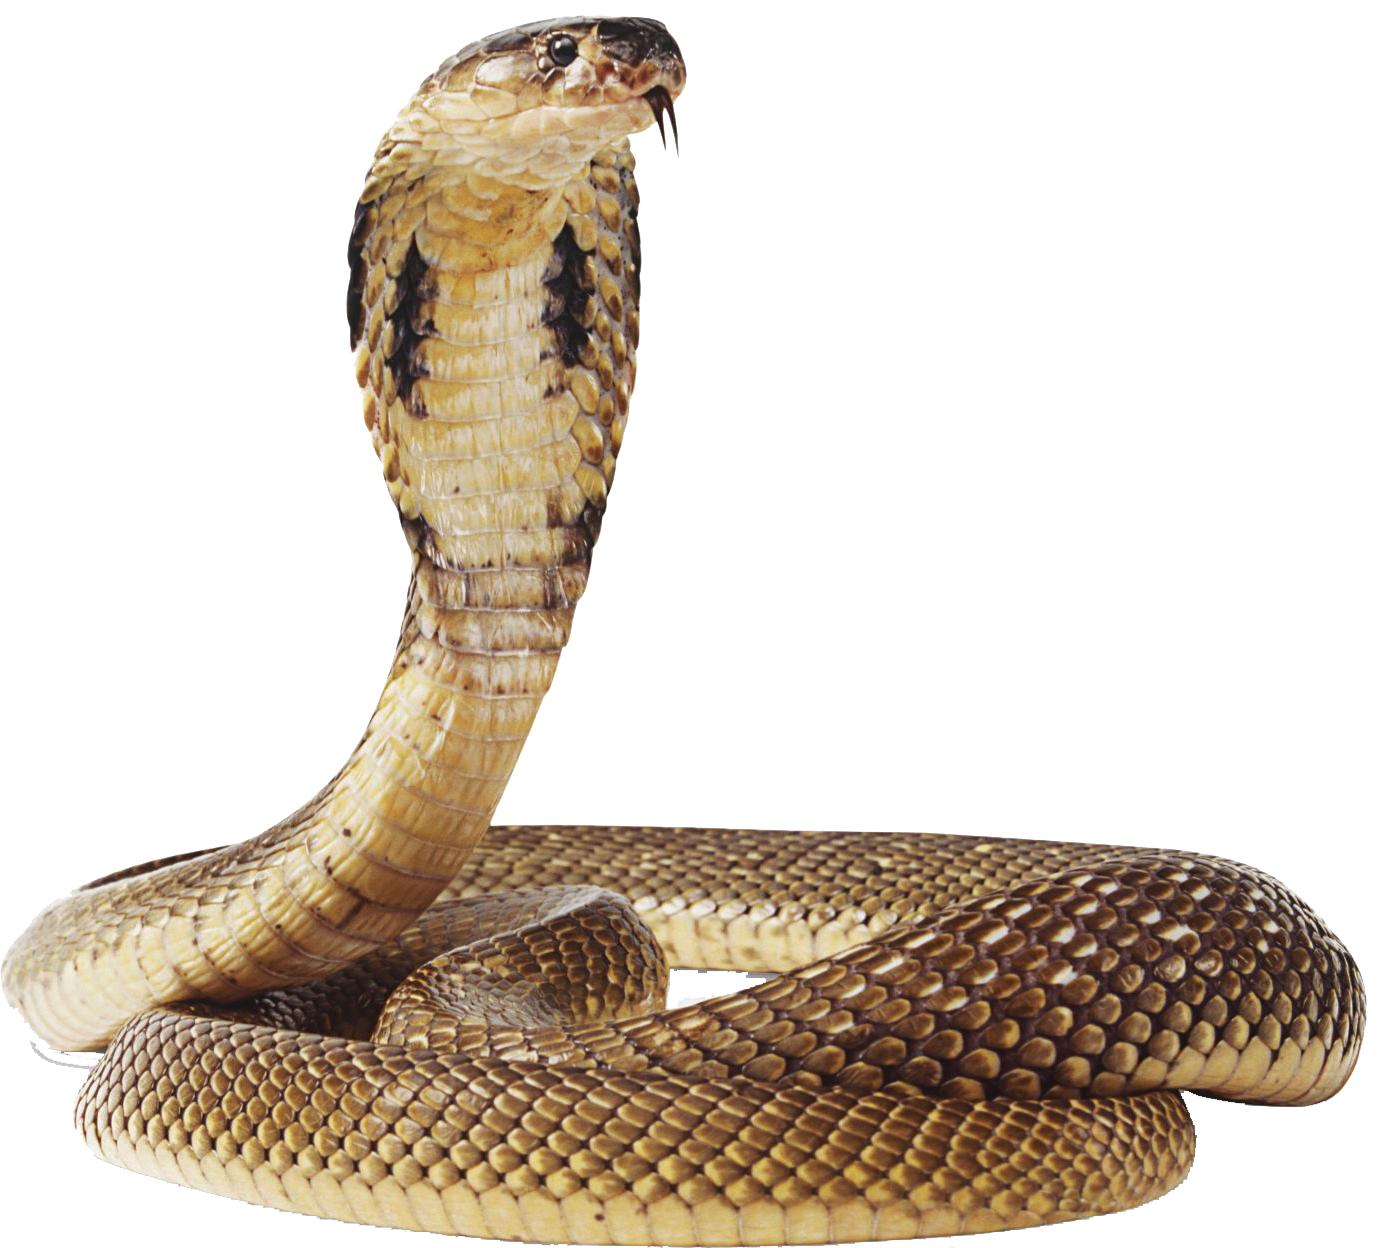 Cobra Snake Png Transparent Image - Cobra Snake, Transparent background PNG HD thumbnail